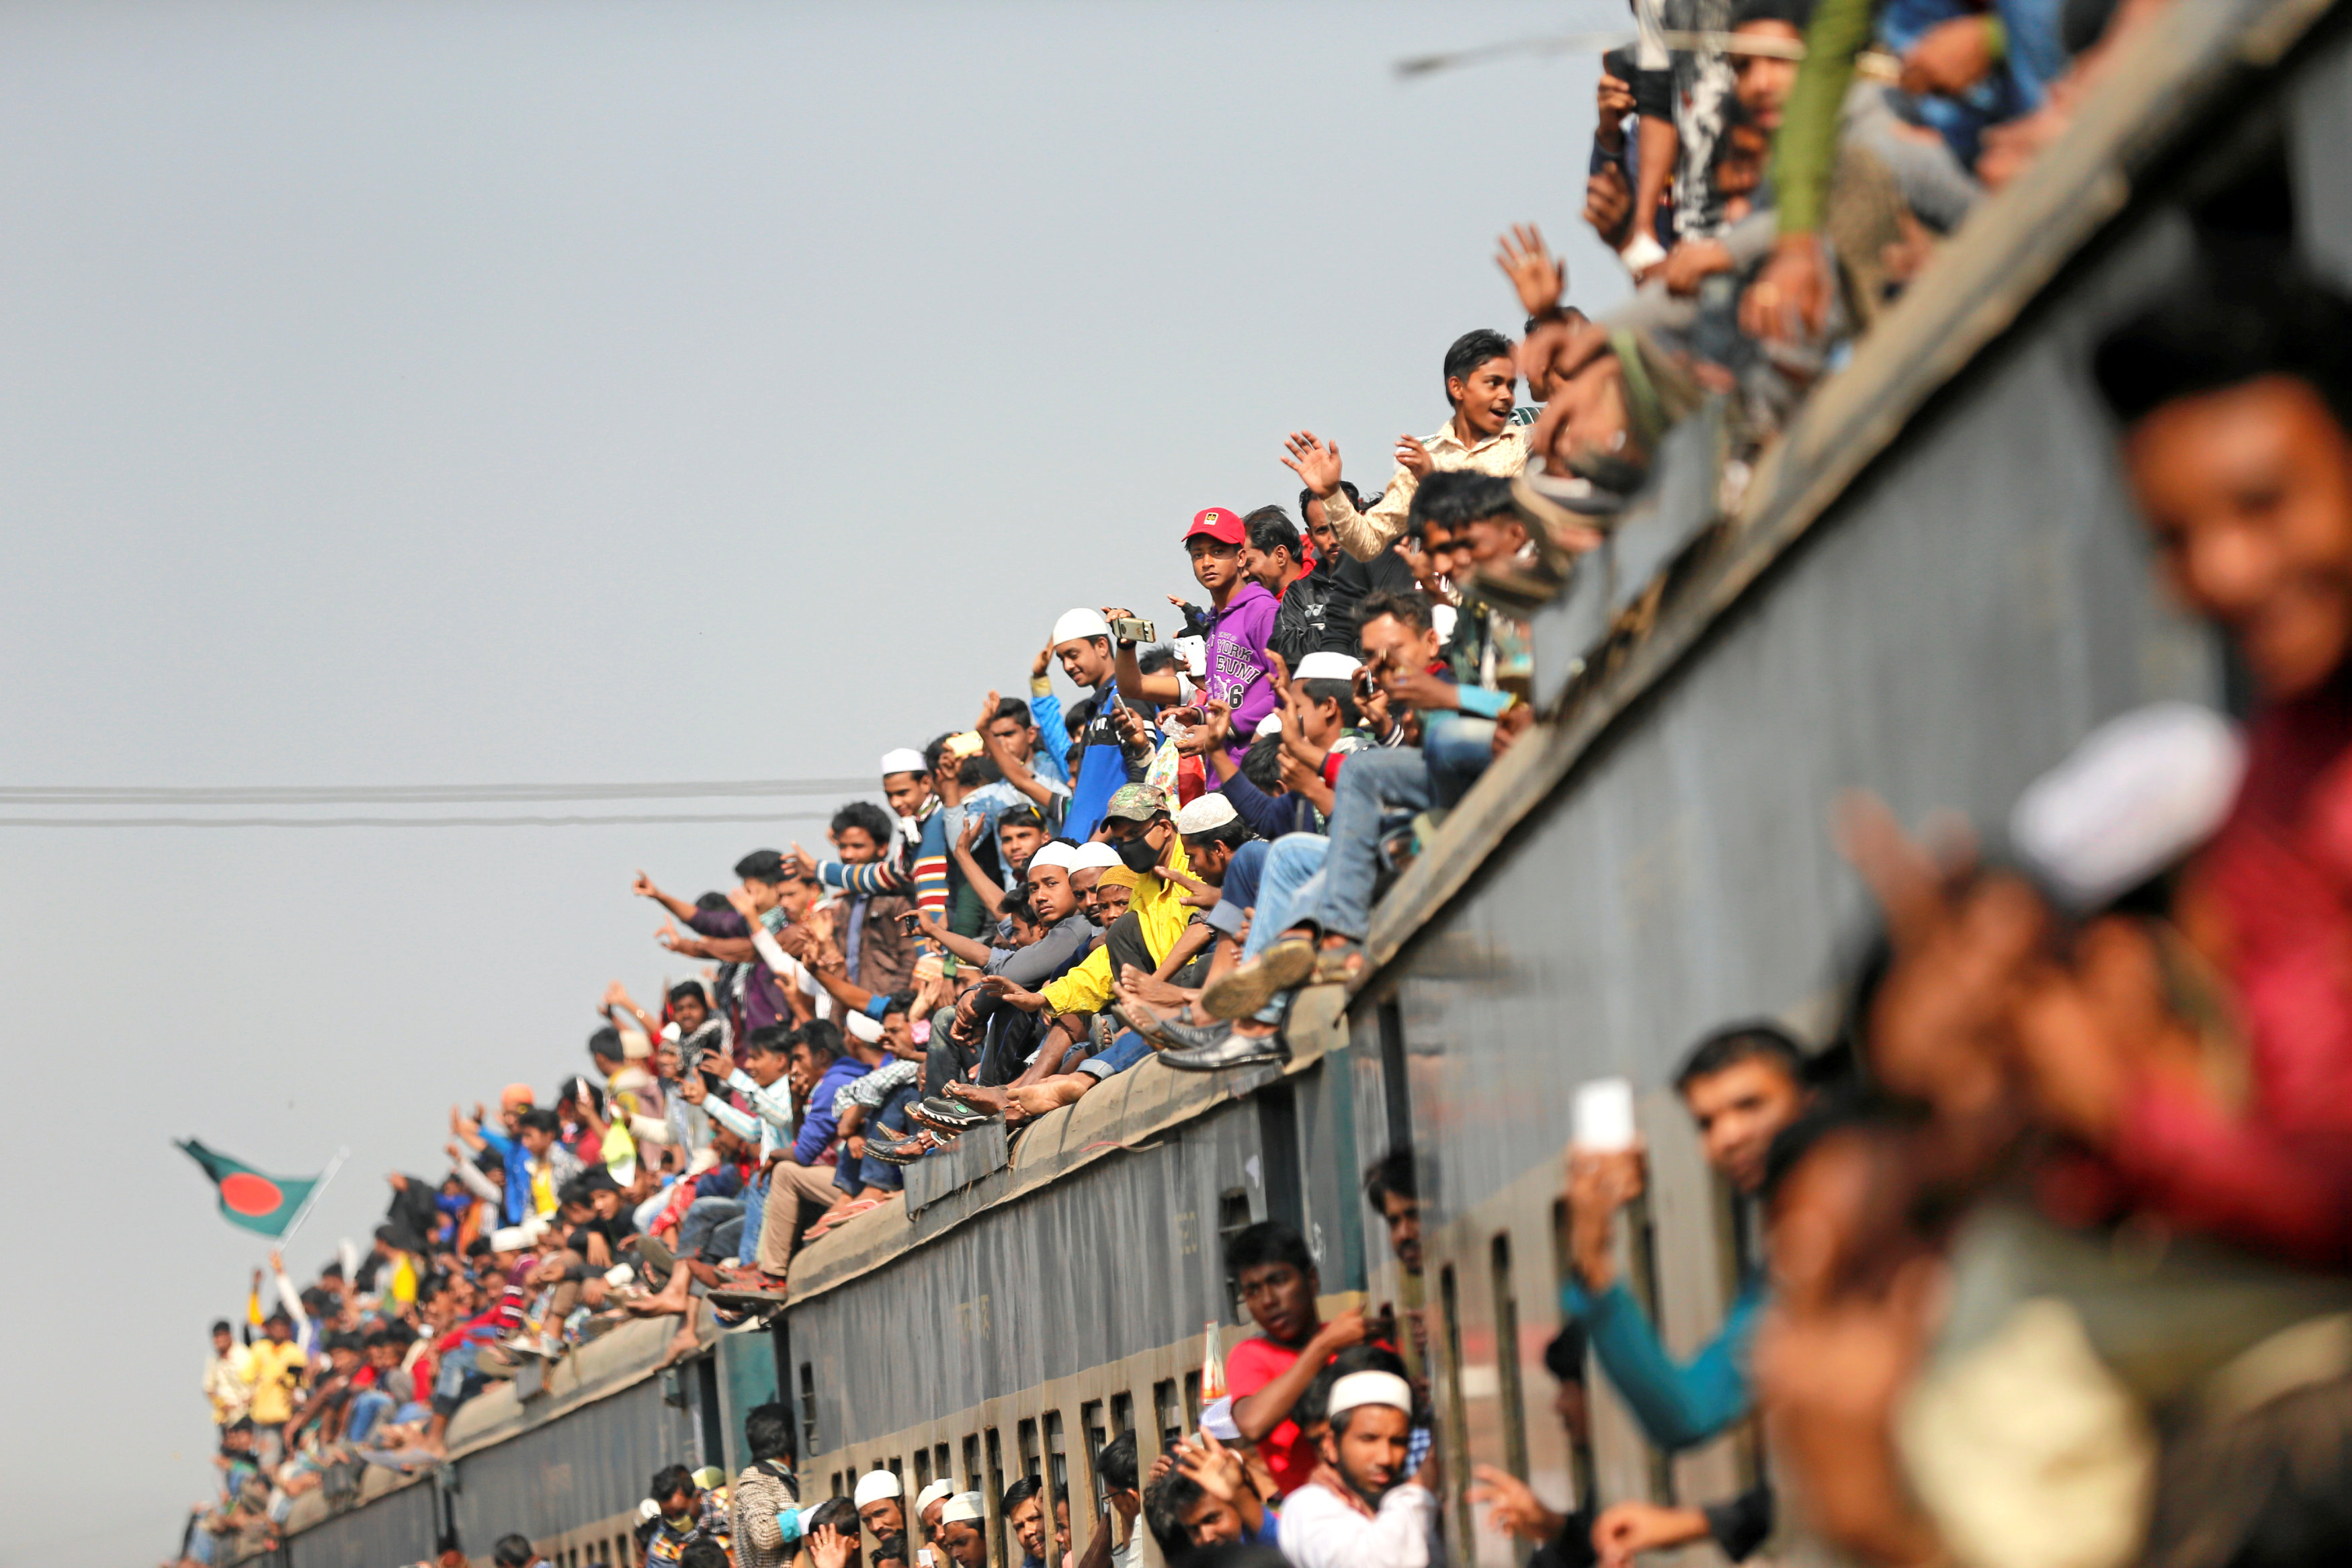 المسلمين يغادرون بنجلاديش بعد حضور تجمع بيشاوا الدينى